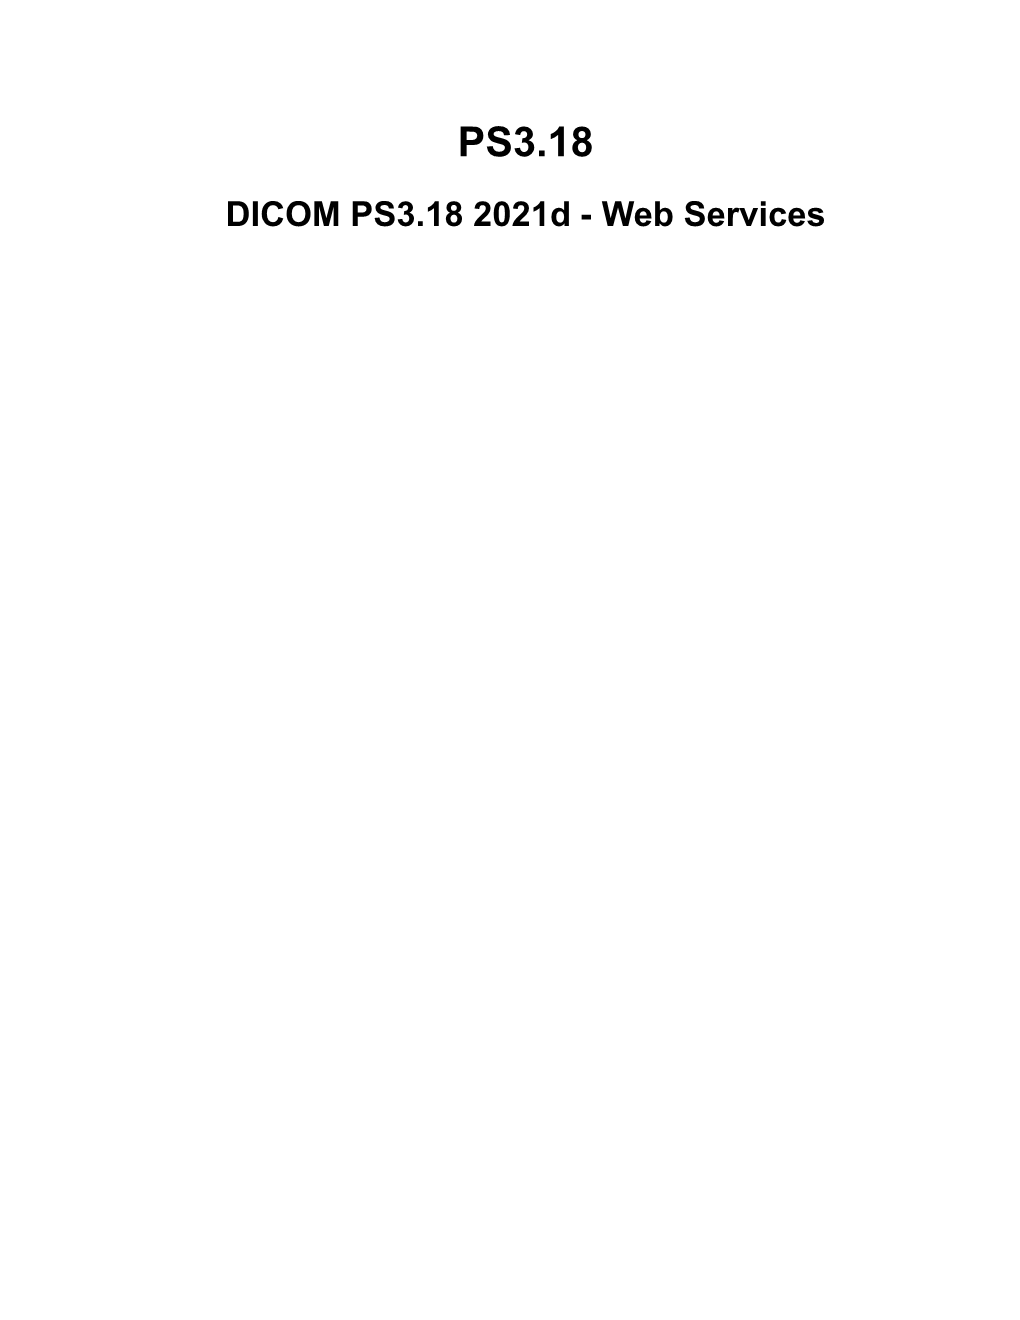 PS3.18​ DICOM PS3.18 2021D - Web Services​ Page 2​